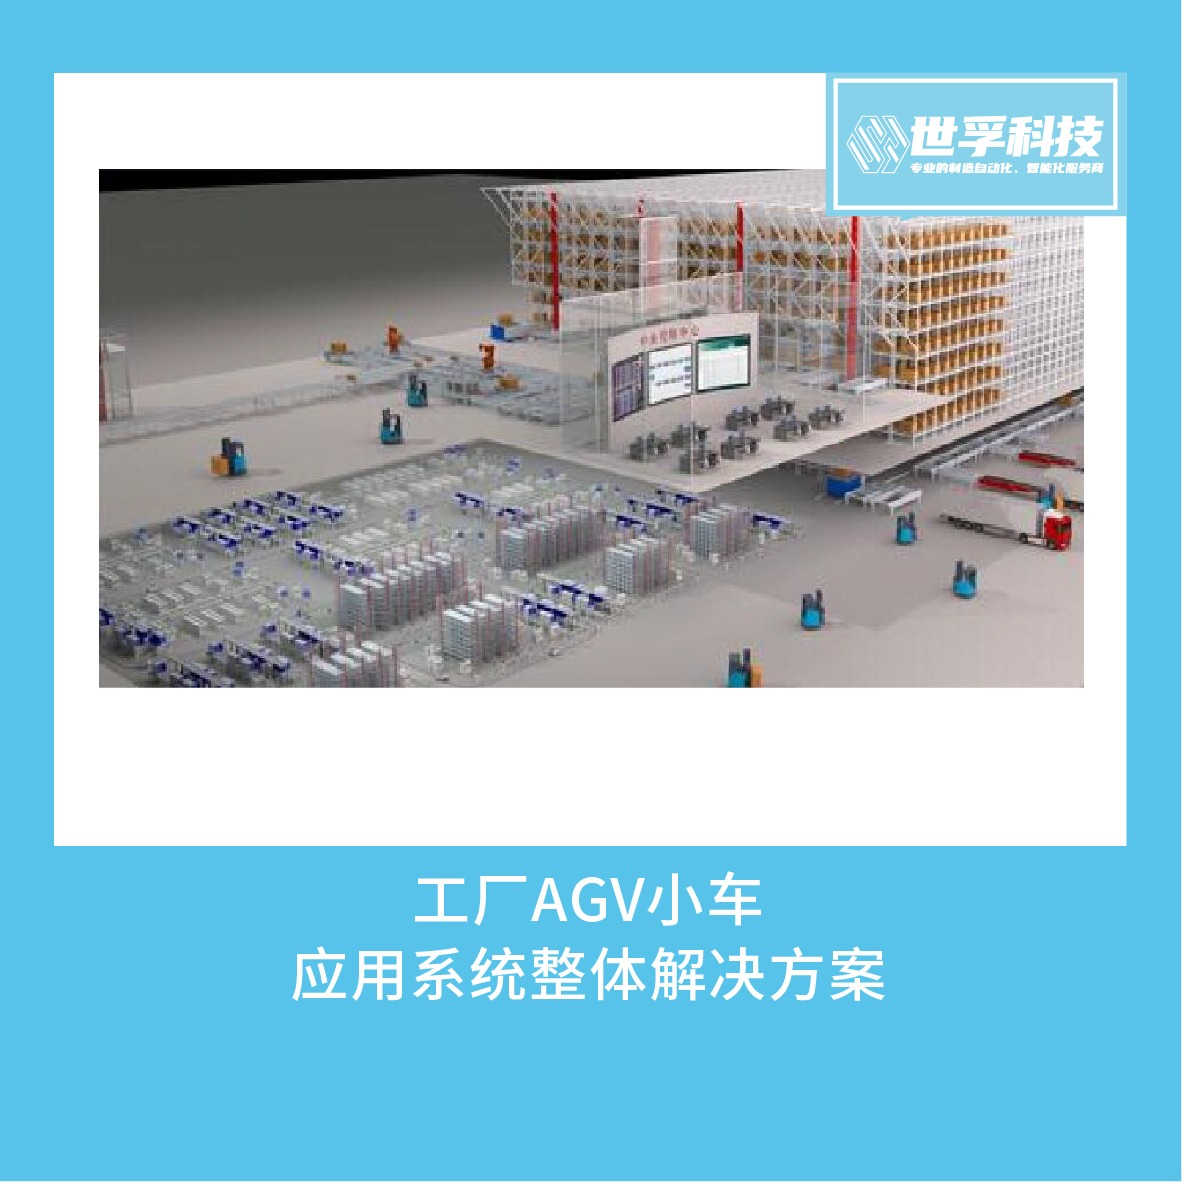 工厂AGV小车搬运输应用物流调度生产管控系统整体解决方案